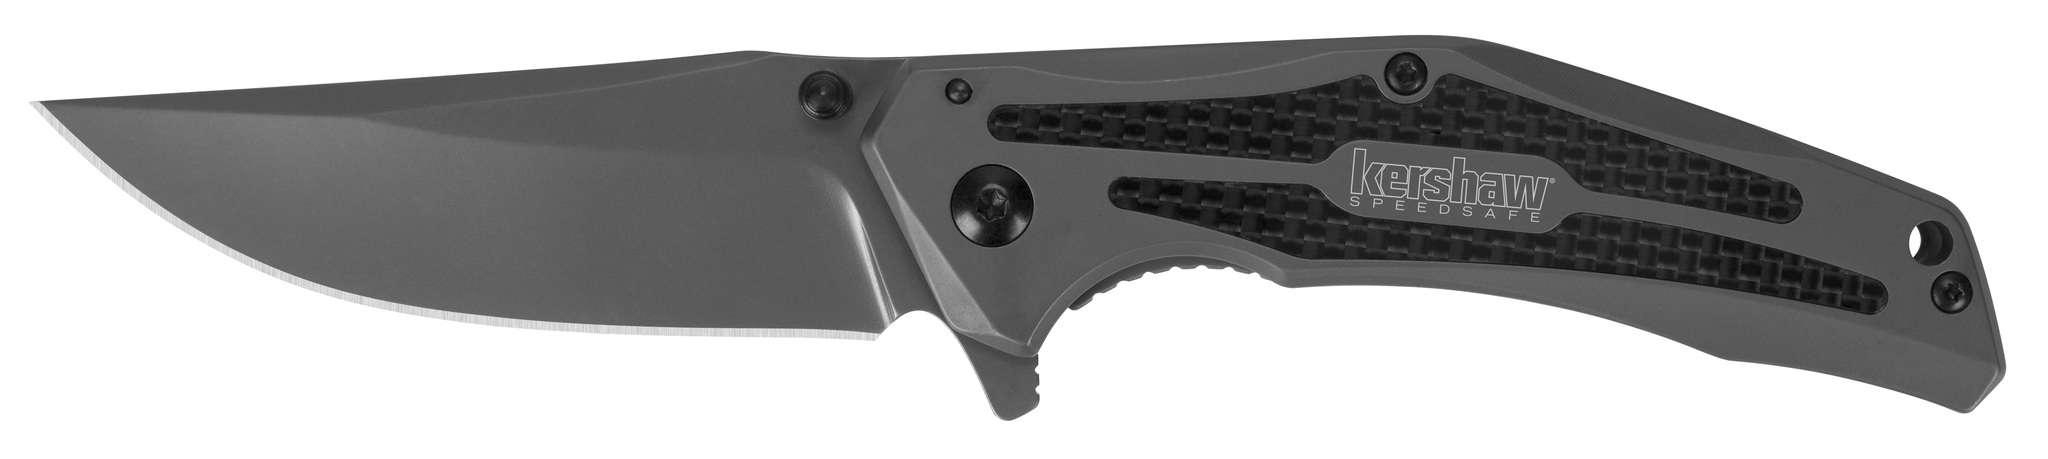 Складной полуавтоматический нож Kershaw Duojet K8300, сталь 8Cr13MoV, рукоять нержавеющая сталь/карбон - фото 1